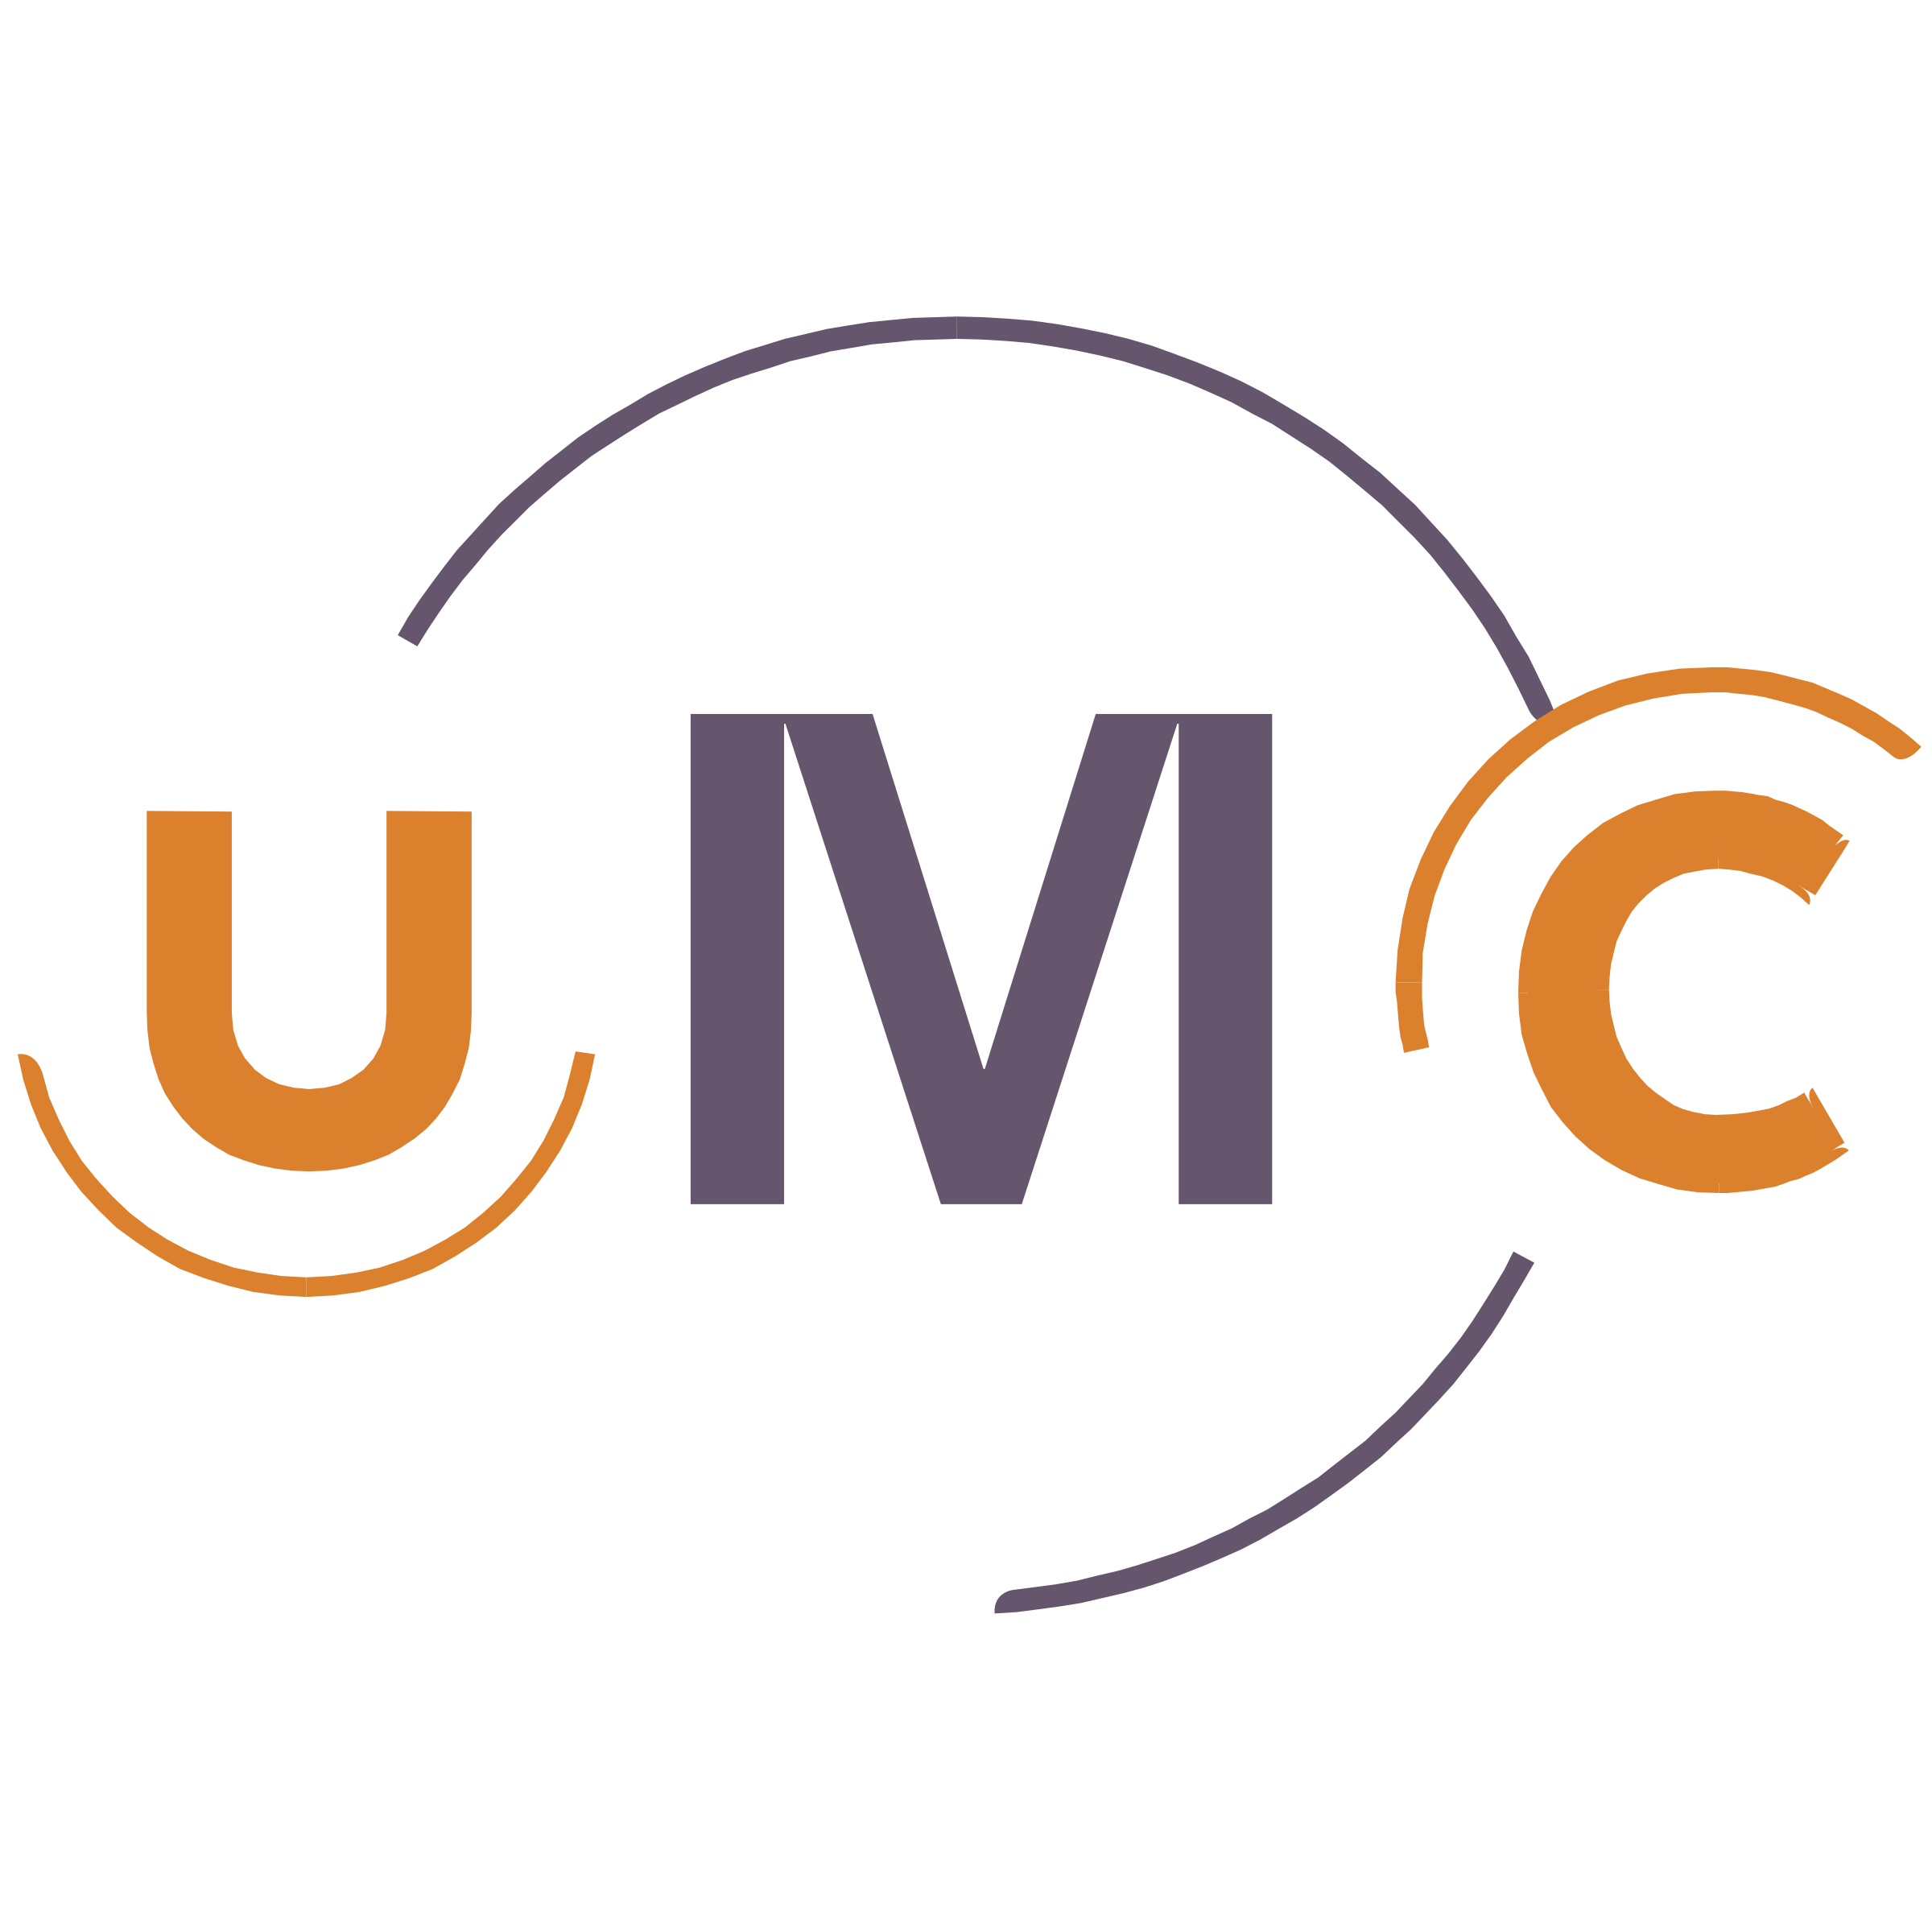 UMC Logo - UMC Logo PNG Transparent & SVG Vector - Freebie Supply